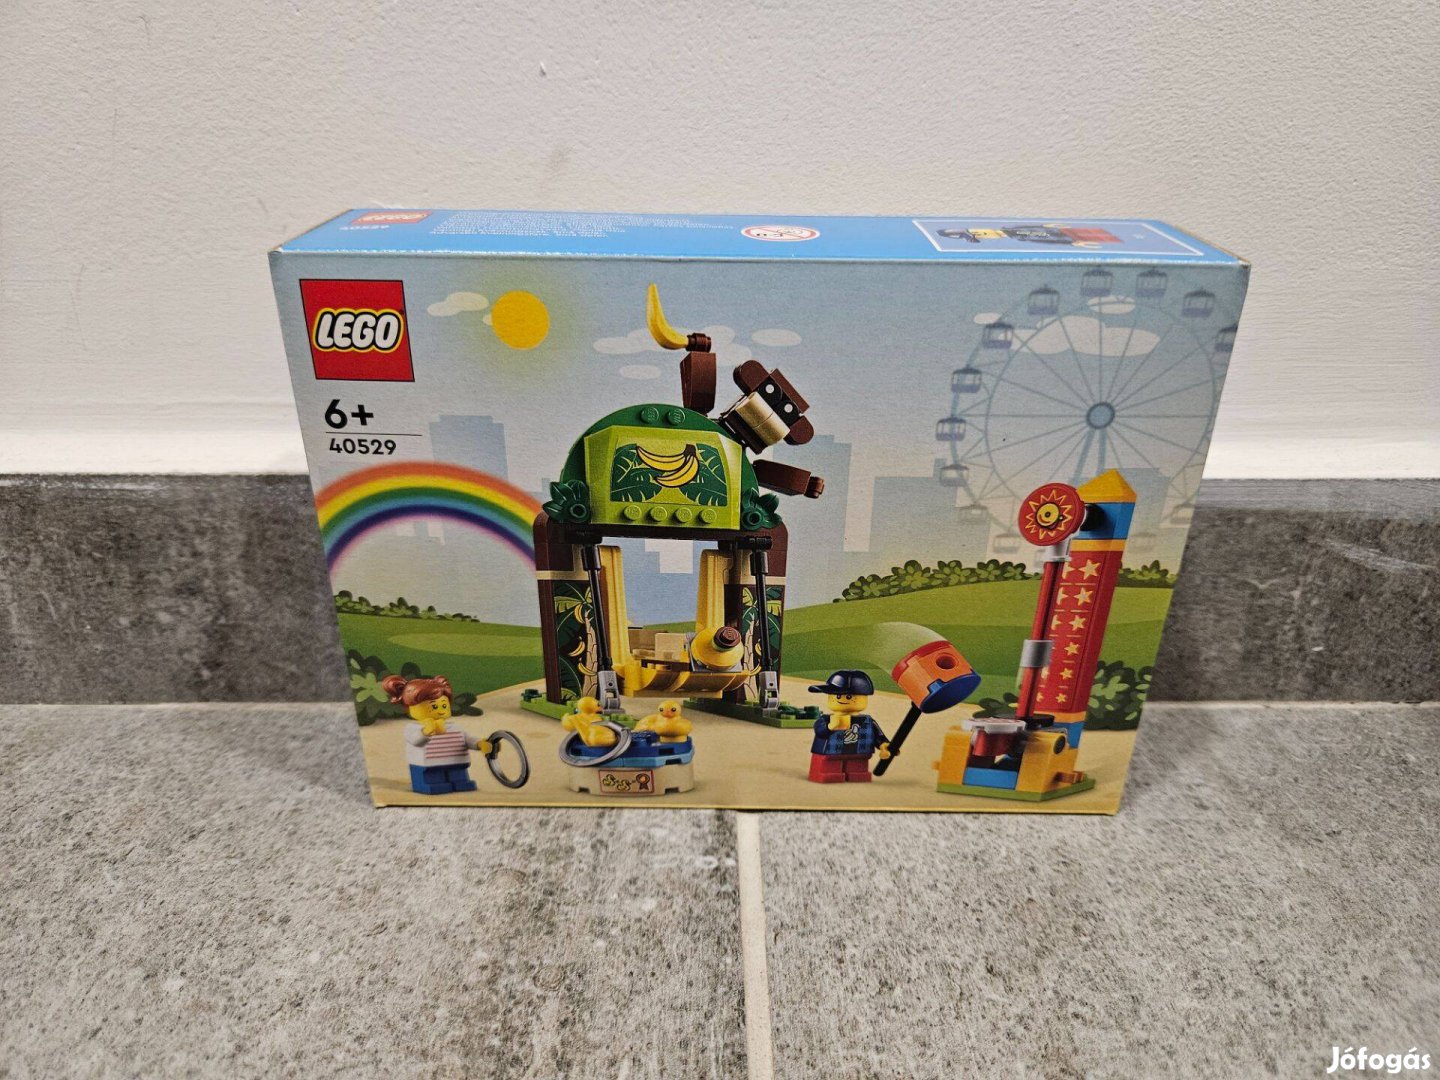 LEGO - Gyermekek vidámparkja 40529 bontatlan, új